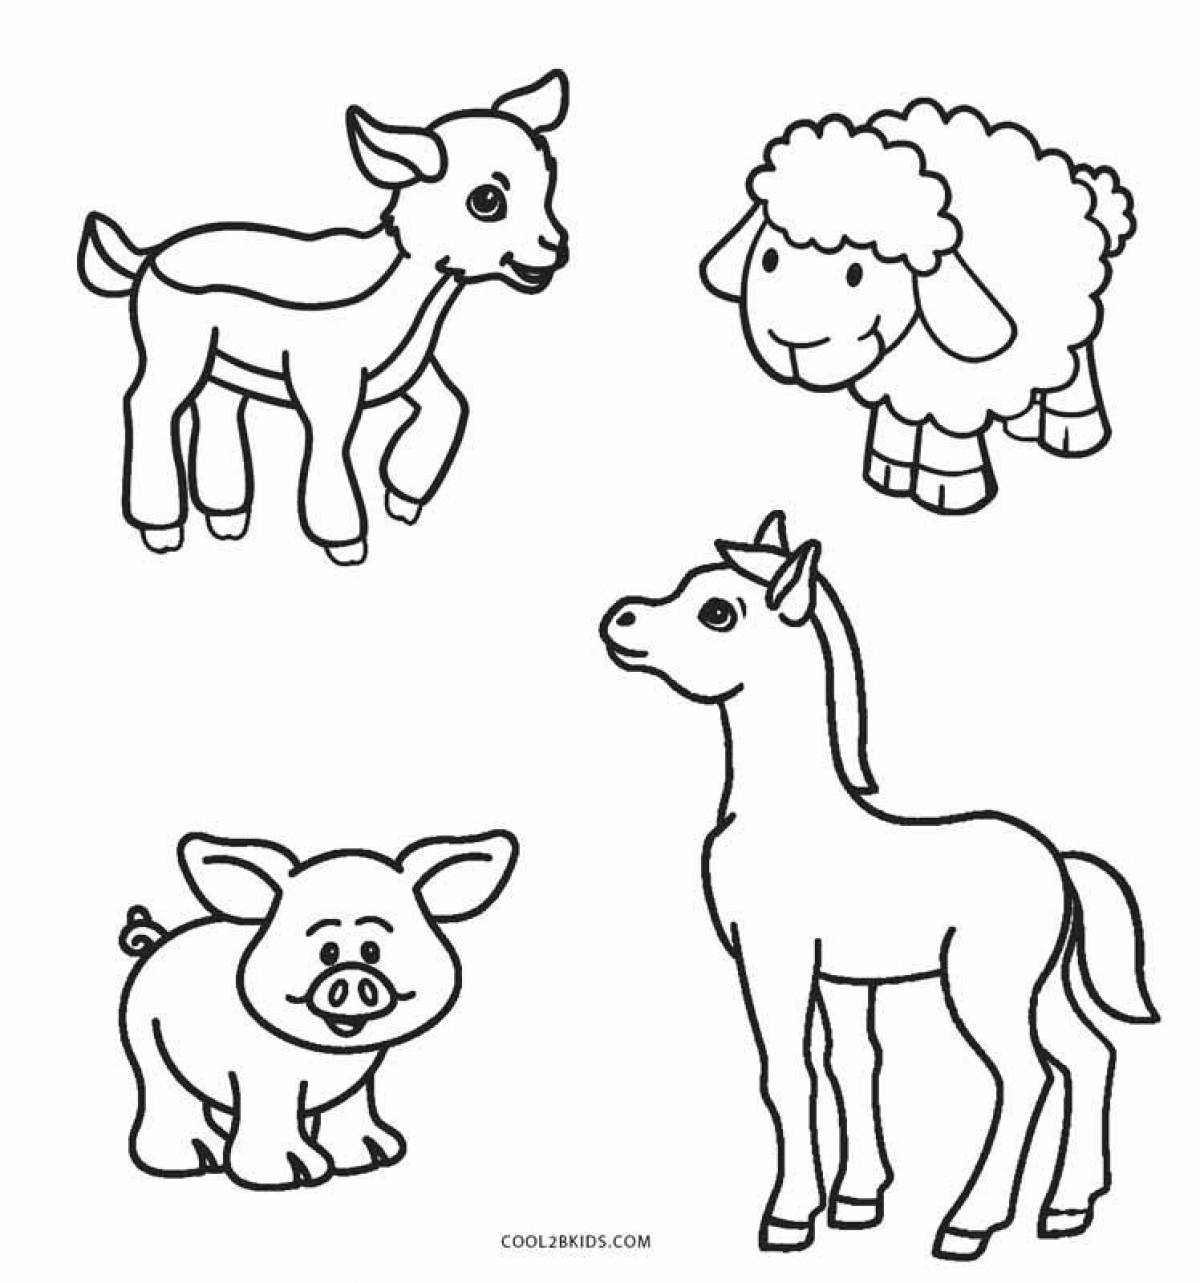 Веселые раскраски животных для детей 3-4 лет